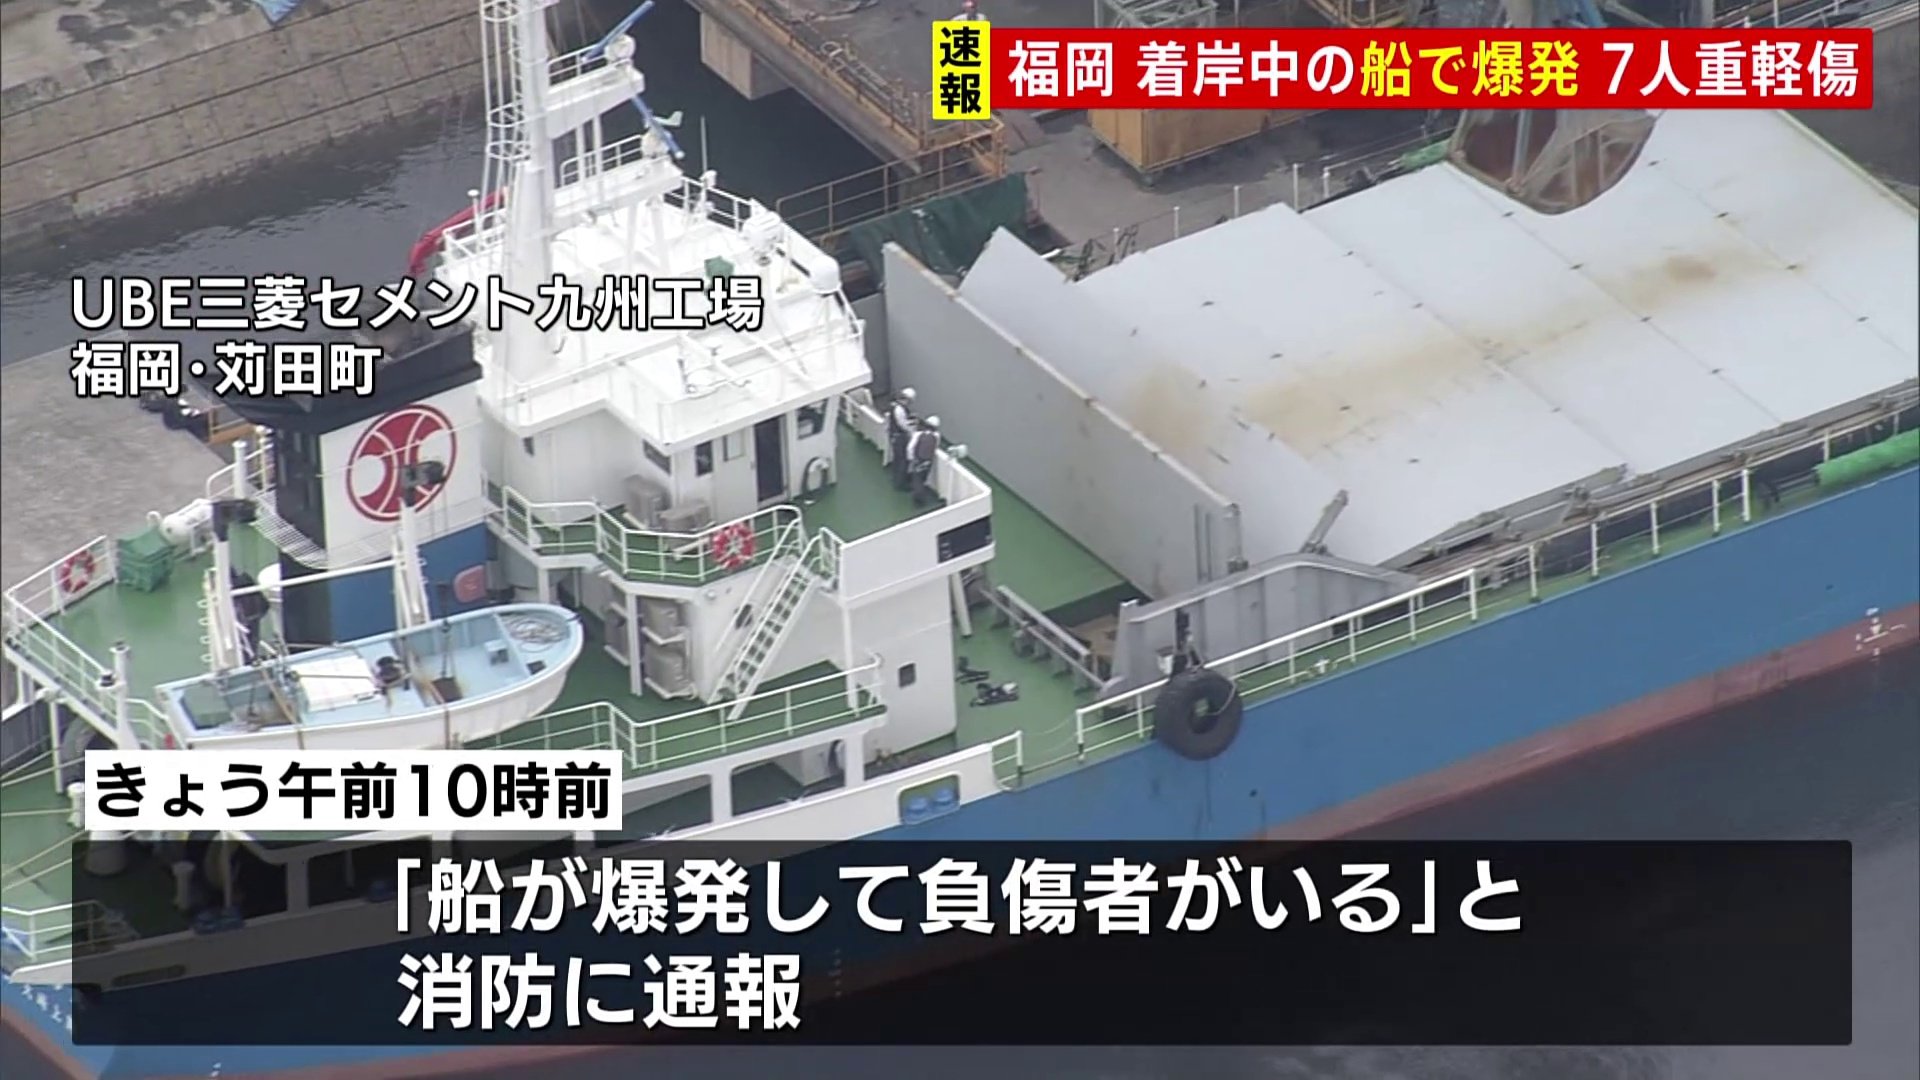 着岸中の船で爆発 7人重軽傷　積み荷の扉を開けた際に爆発か　福岡・苅田町のUBE三菱セメント九州工場